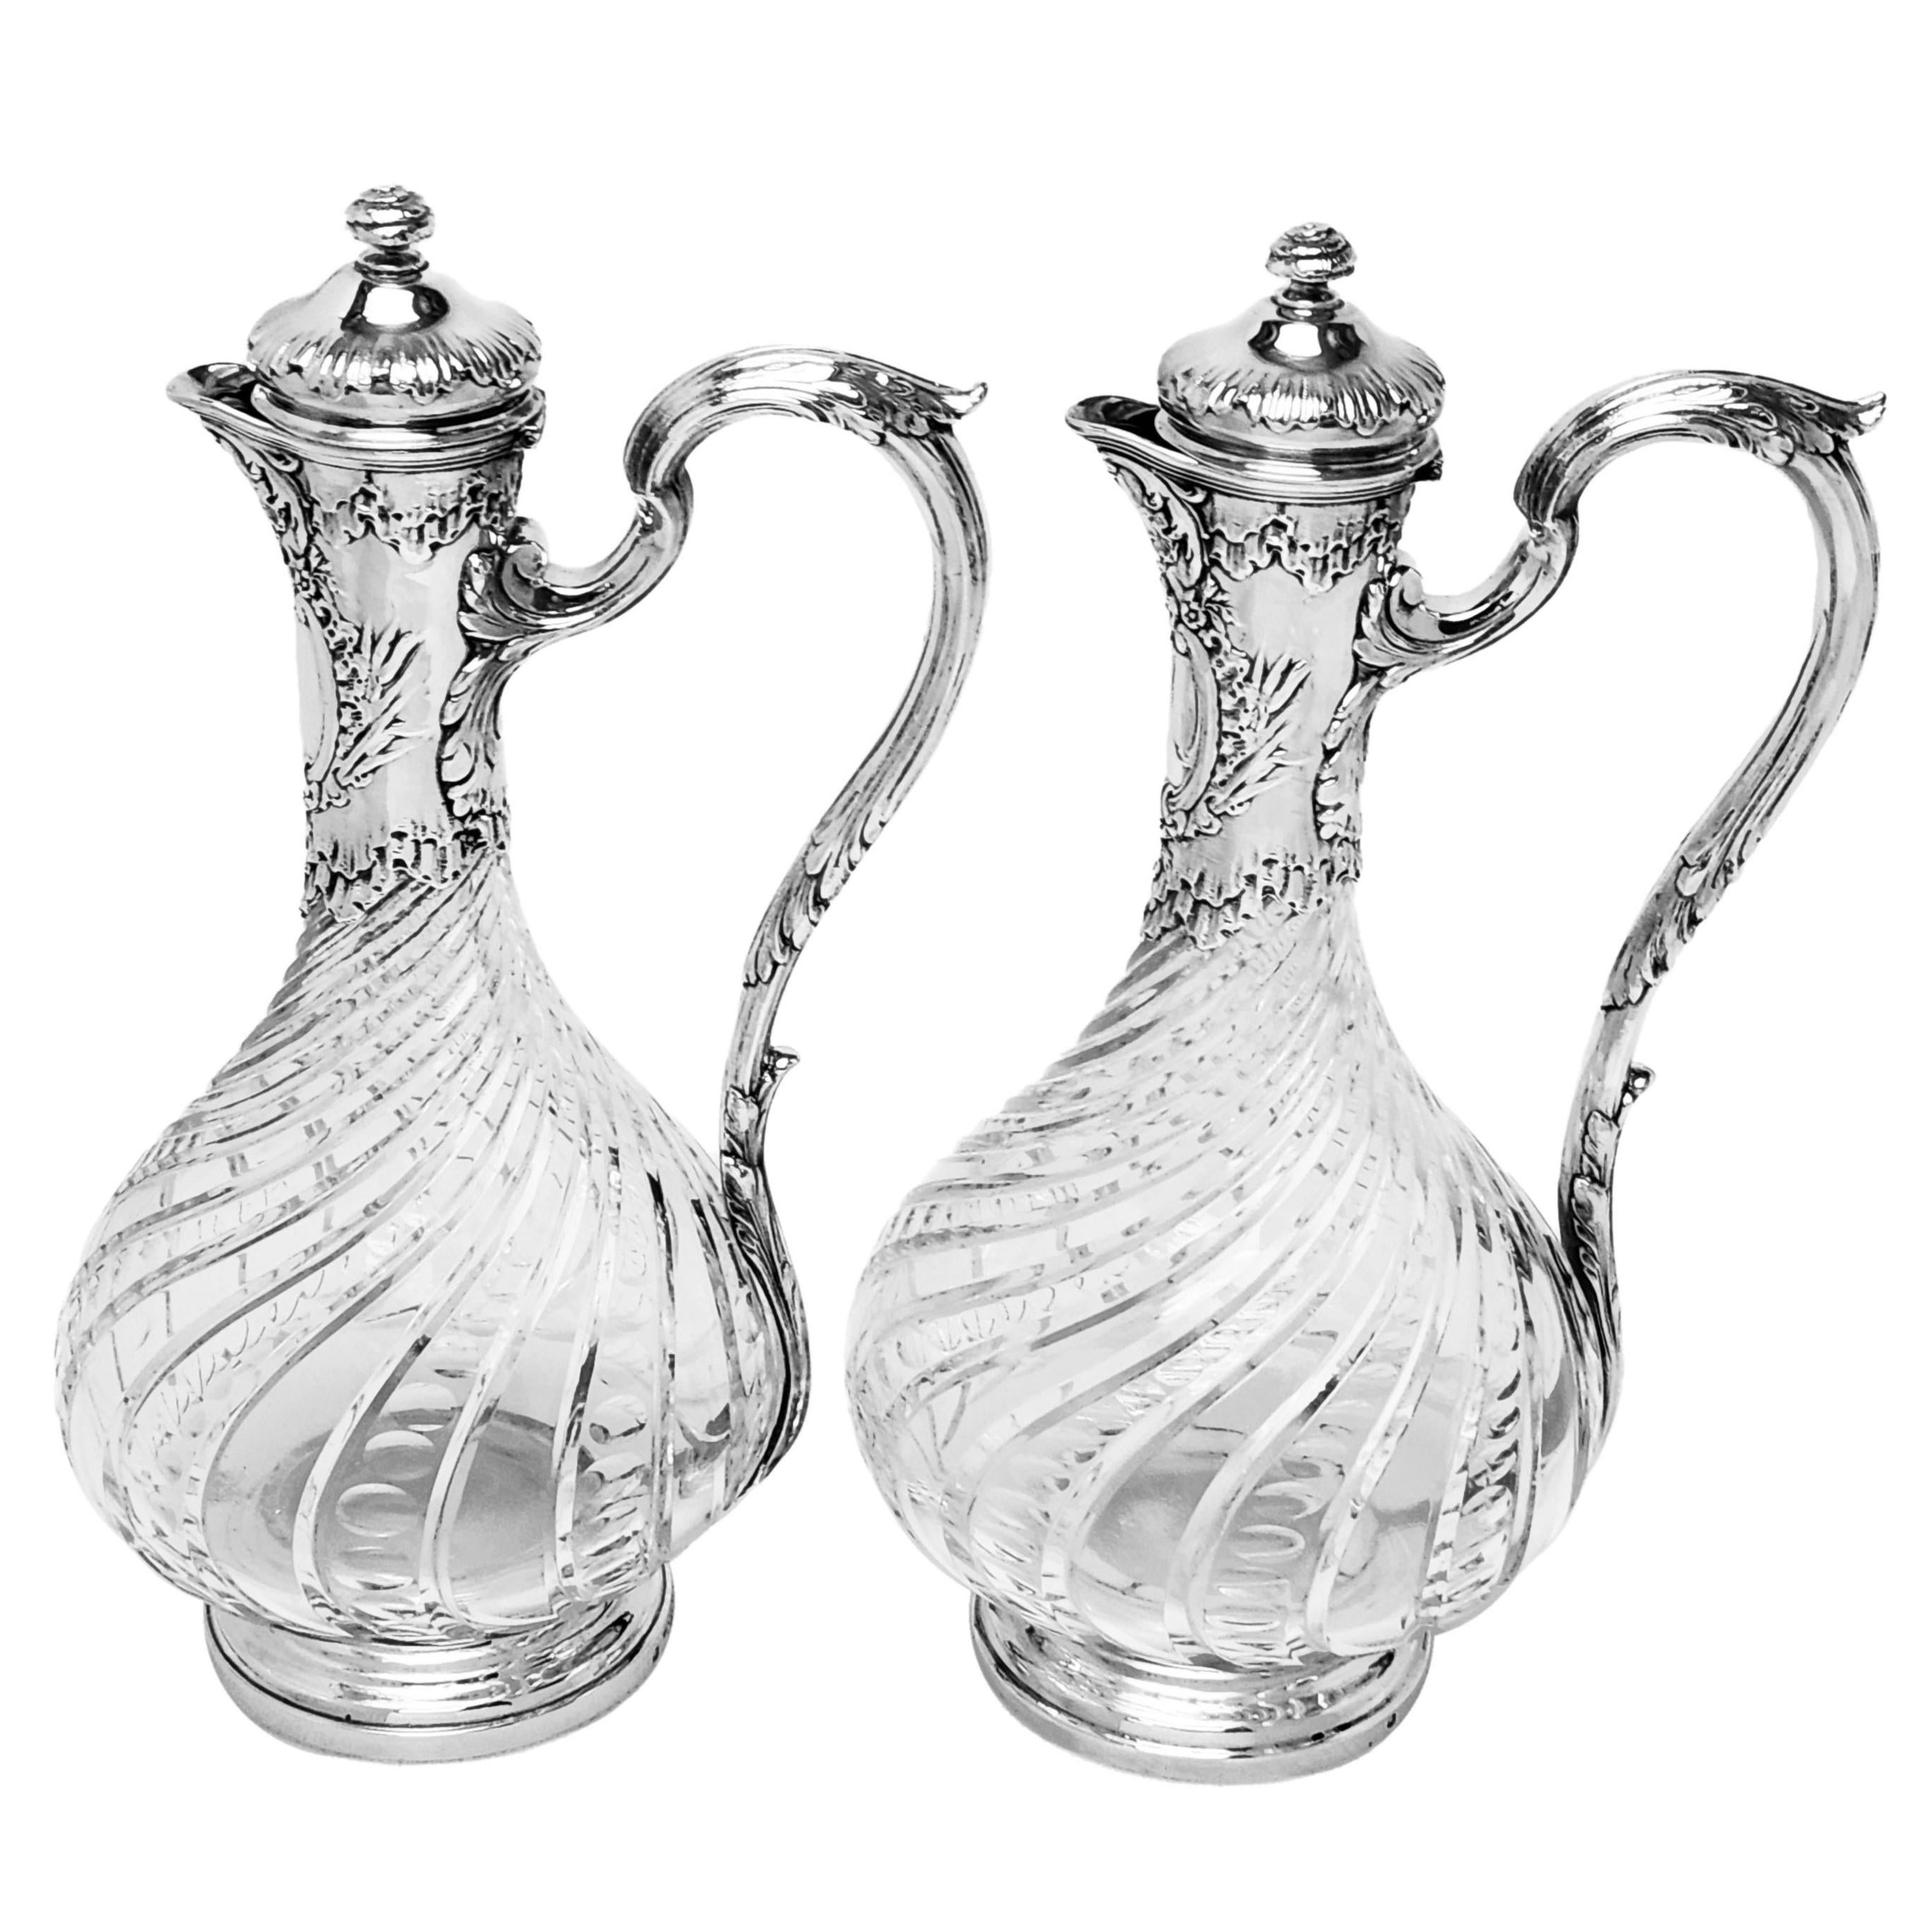 Ein Paar elegante, antike, in Silber gefasste Glaskrüge aus Paris, Frankreich, mit Claret-Körper. Dieses Paar Weinkrüge hat einen verzierten, ziselierten und gravierten Hals und Deckel mit einer geformten Kartusche unterhalb des Ausgusses. Der